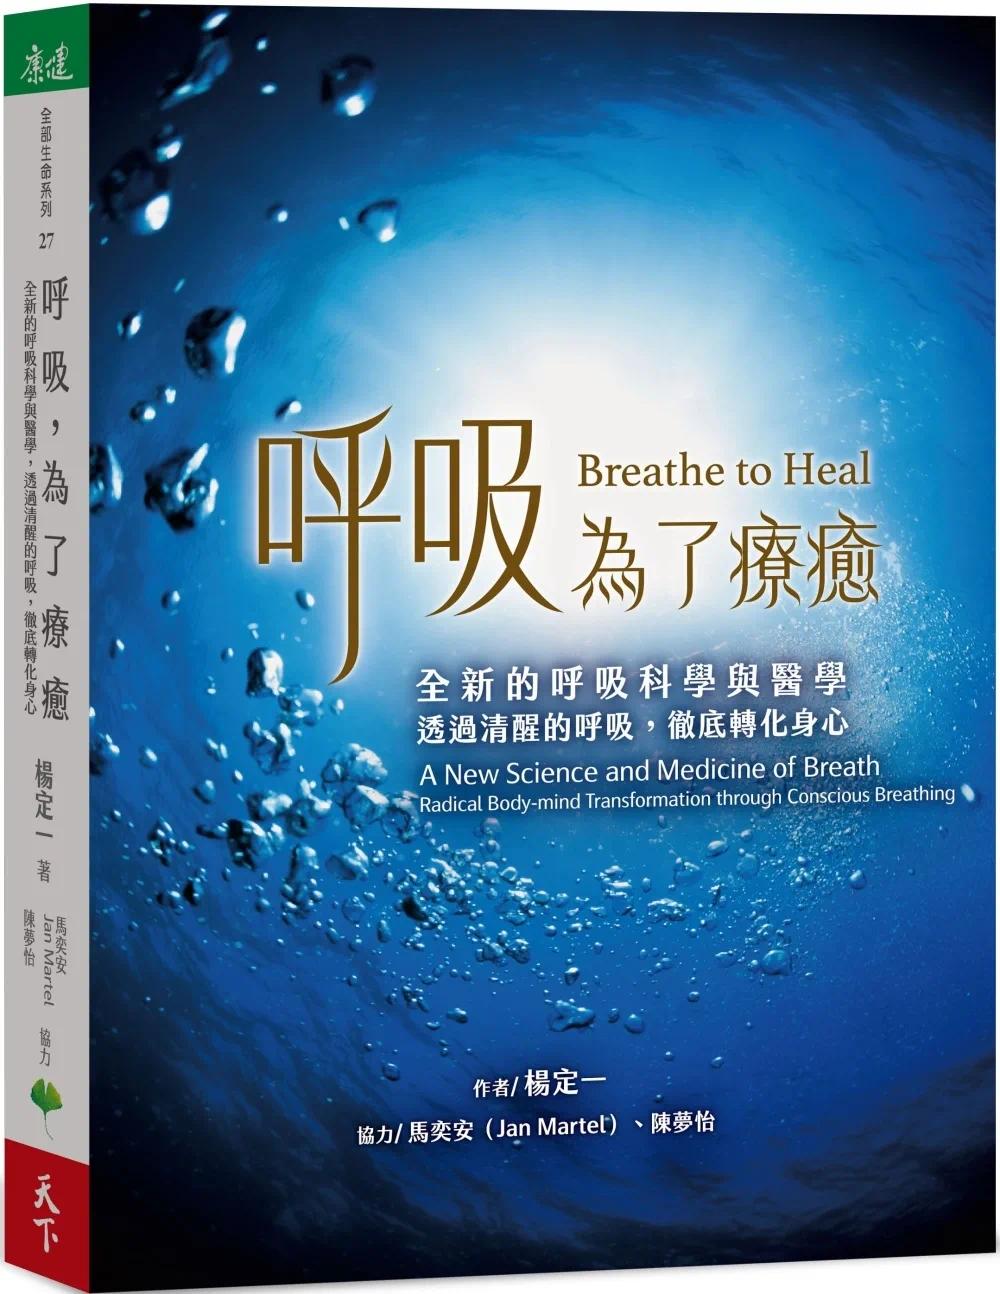 现货 呼吸 为了疗愈 全新的呼吸科学与医学 透过清醒的呼吸 彻底转化身心 港台原版 杨定一 天下生活